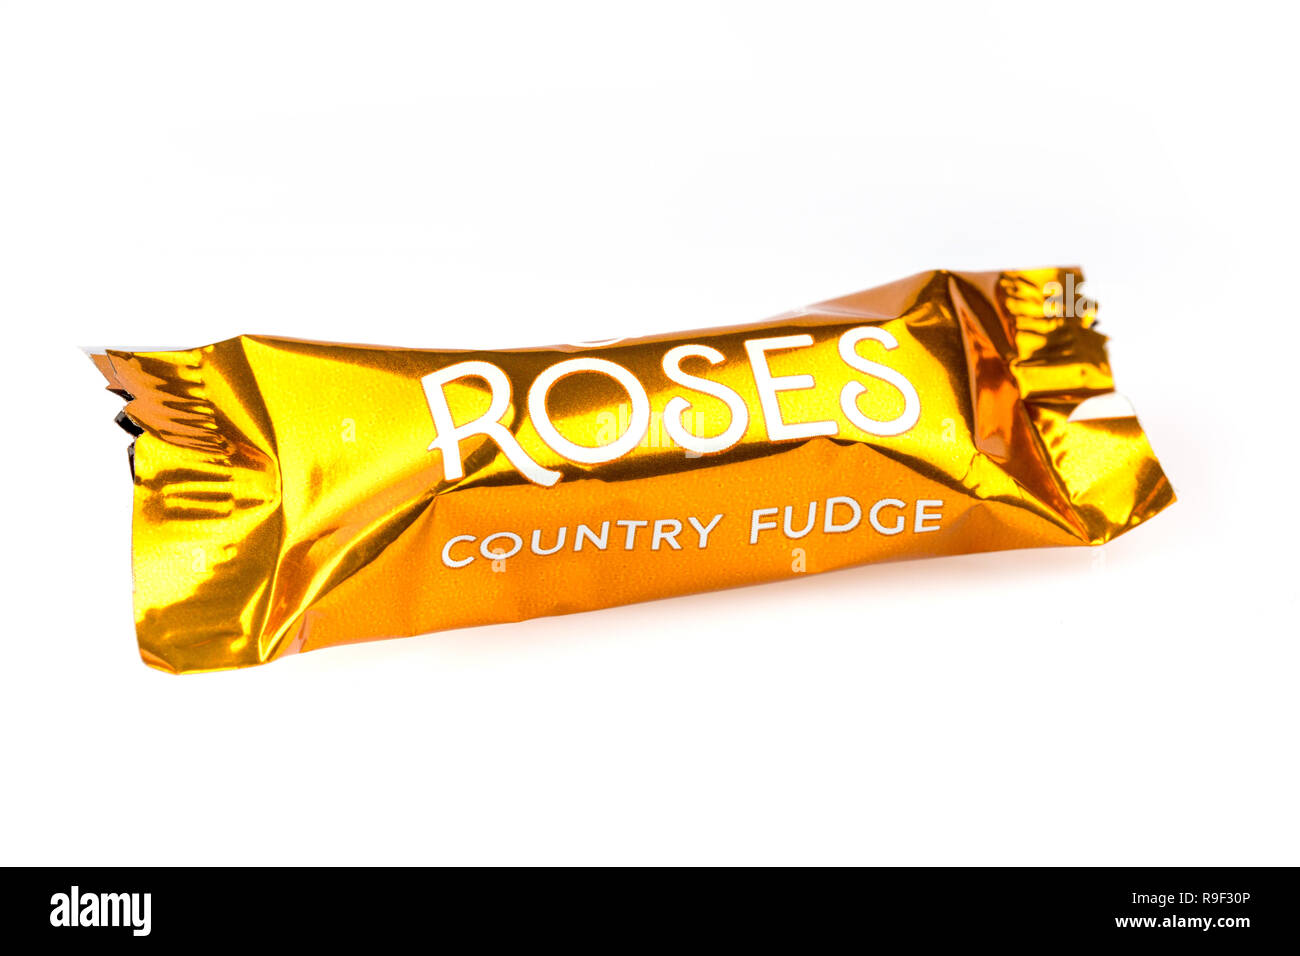 Pays Fudge au chocolat Cadbury's roses sur fond blanc Banque D'Images